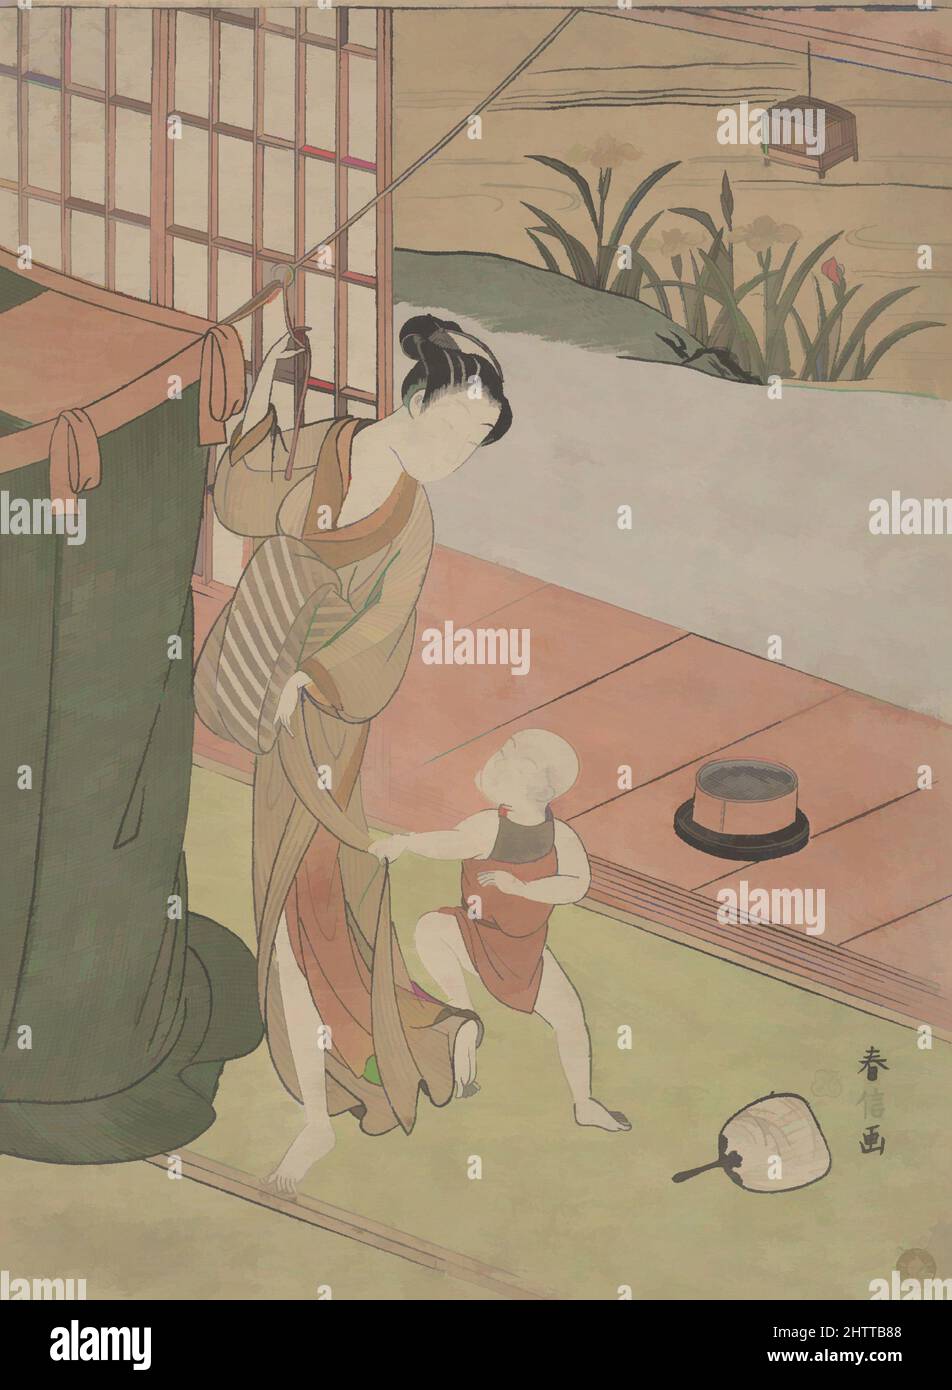 Art inspiré par mère et fils, période Edo (1615–1868), env. 1769, Japon, imprimé polychrome sur bois ; encre et couleur sur papier, 10 3/4 x 7 15/16 po. (27,3 x 20,2 cm), Prints, Suzuki Harunobu (japonais, 1725–1770), la relation de mère et de fils dans la vie quotidienne est un Harunobu récurrent, œuvres classiques modernisées par Artotop avec un peu de modernité. Formes, couleur et valeur, impact visuel accrocheur sur l'art émotions par la liberté d'œuvres d'art d'une manière contemporaine. Un message intemporel qui cherche une nouvelle direction créative. Artistes qui se tournent vers le support numérique et créent le NFT Artotop Banque D'Images